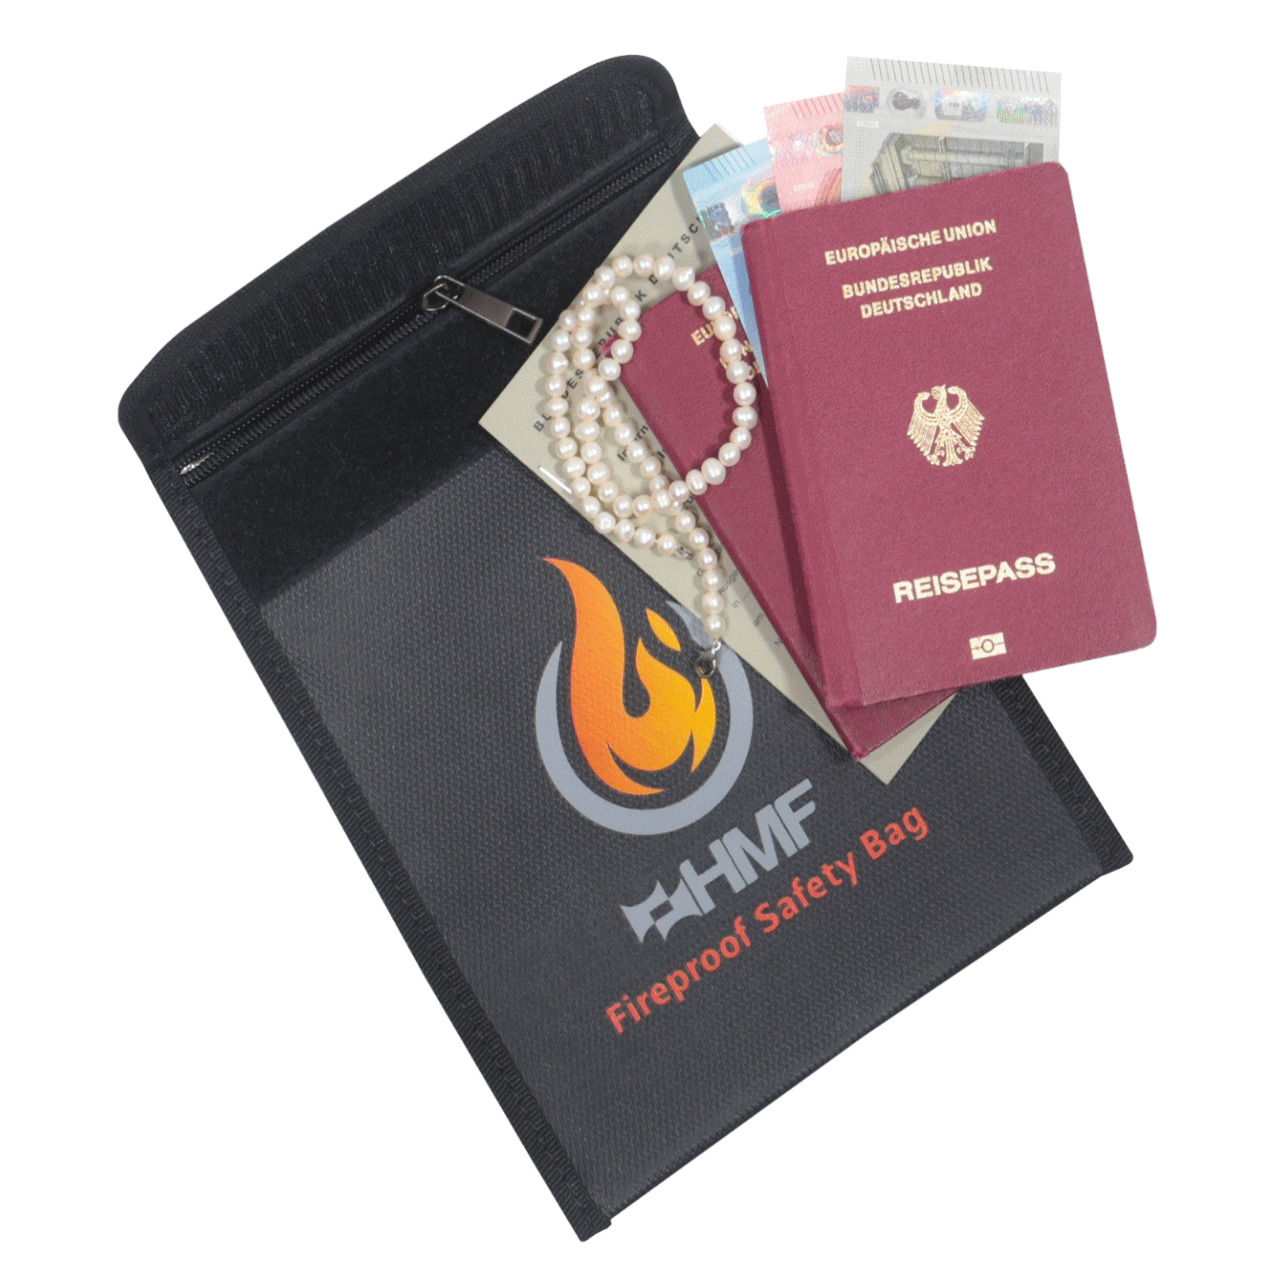 HMF Feuerfeste Dokumententasche, Brandschutztasche, LiPo Tasche, LiPo Guard Safe - Selbstschutz-Deutschland 